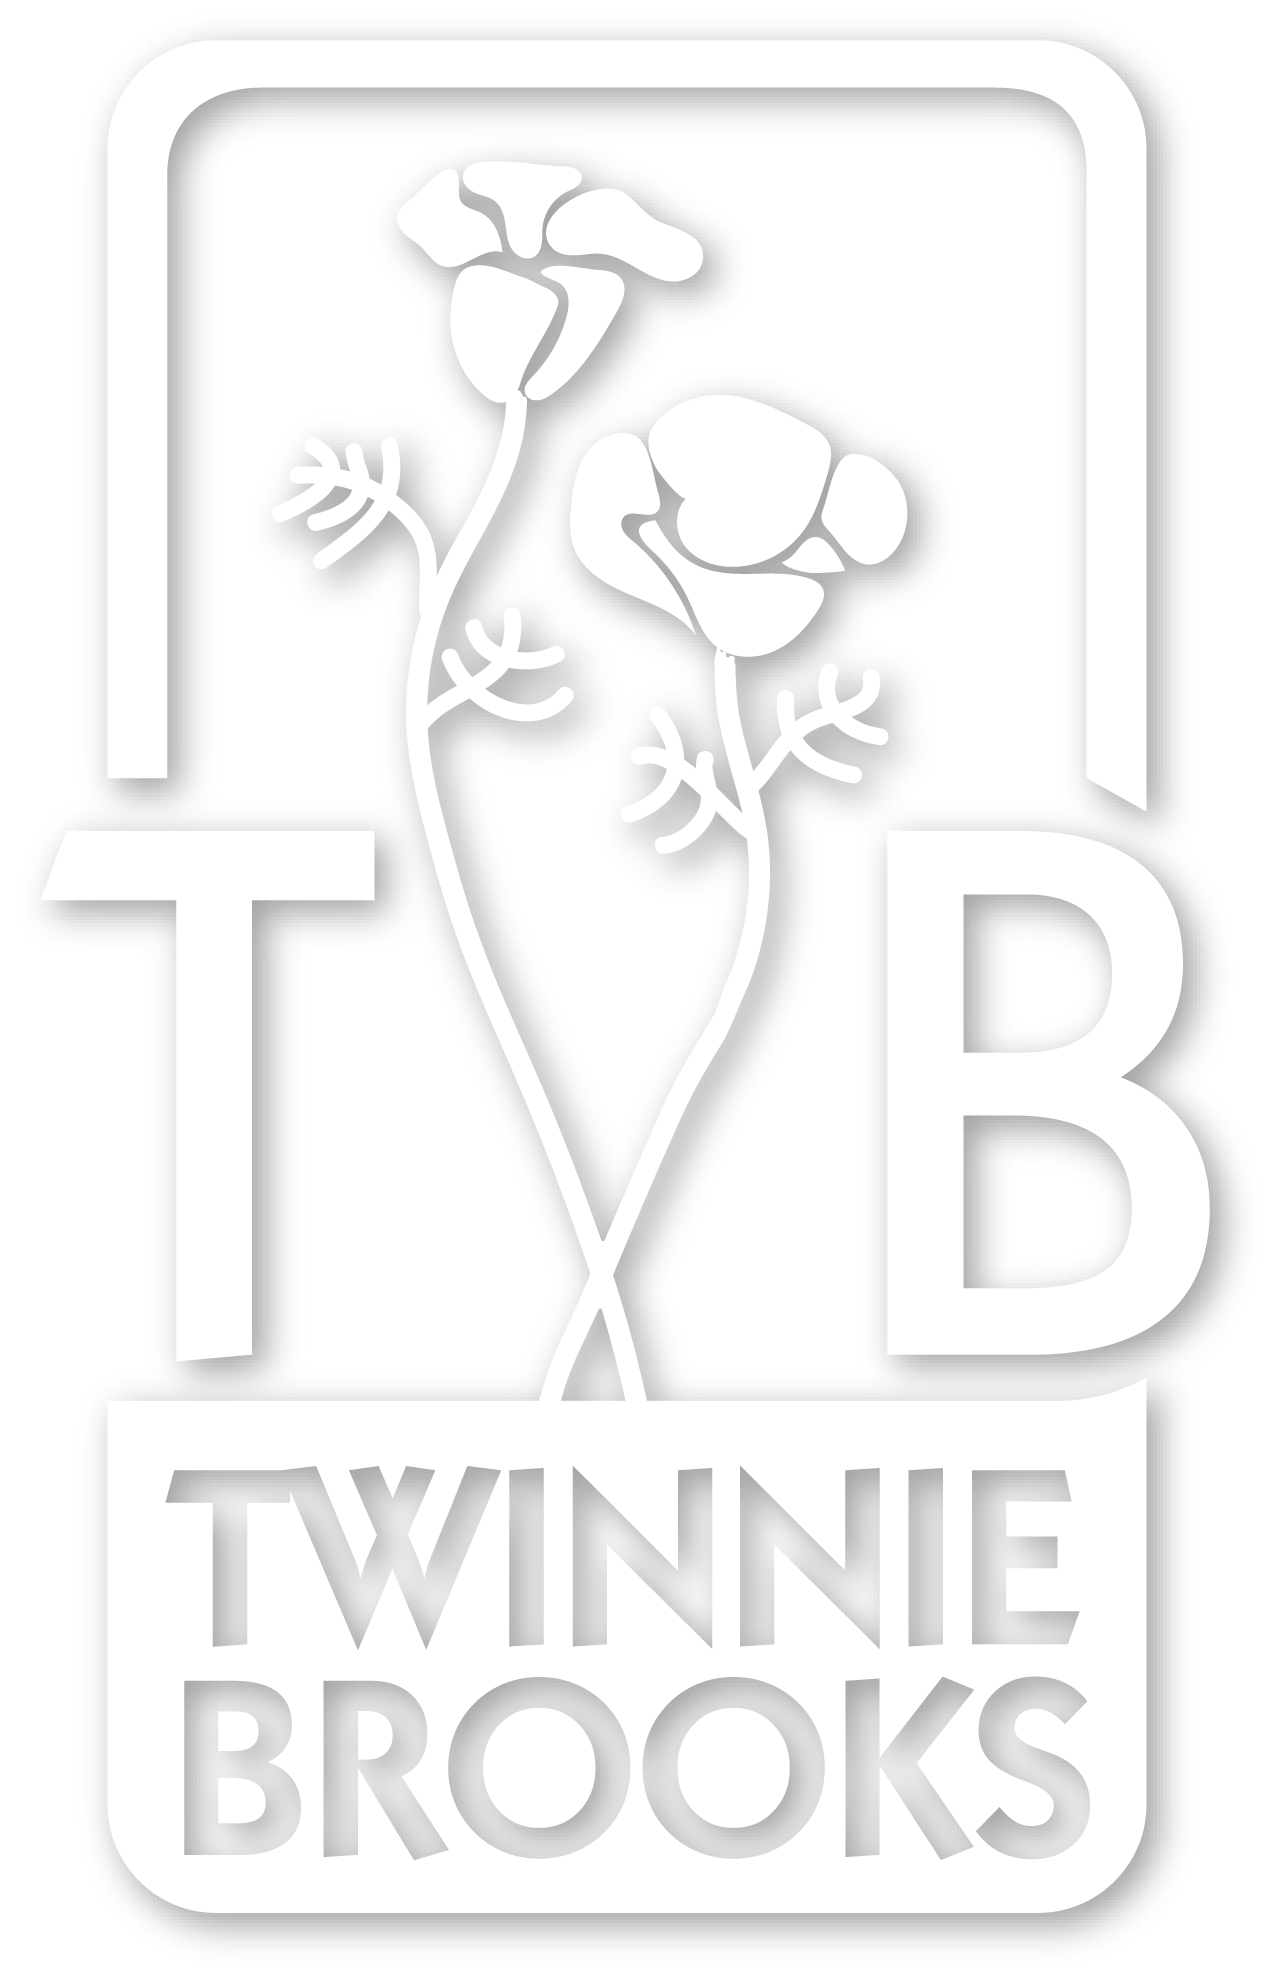 Twinnie Brooks Logo shows twin poppies